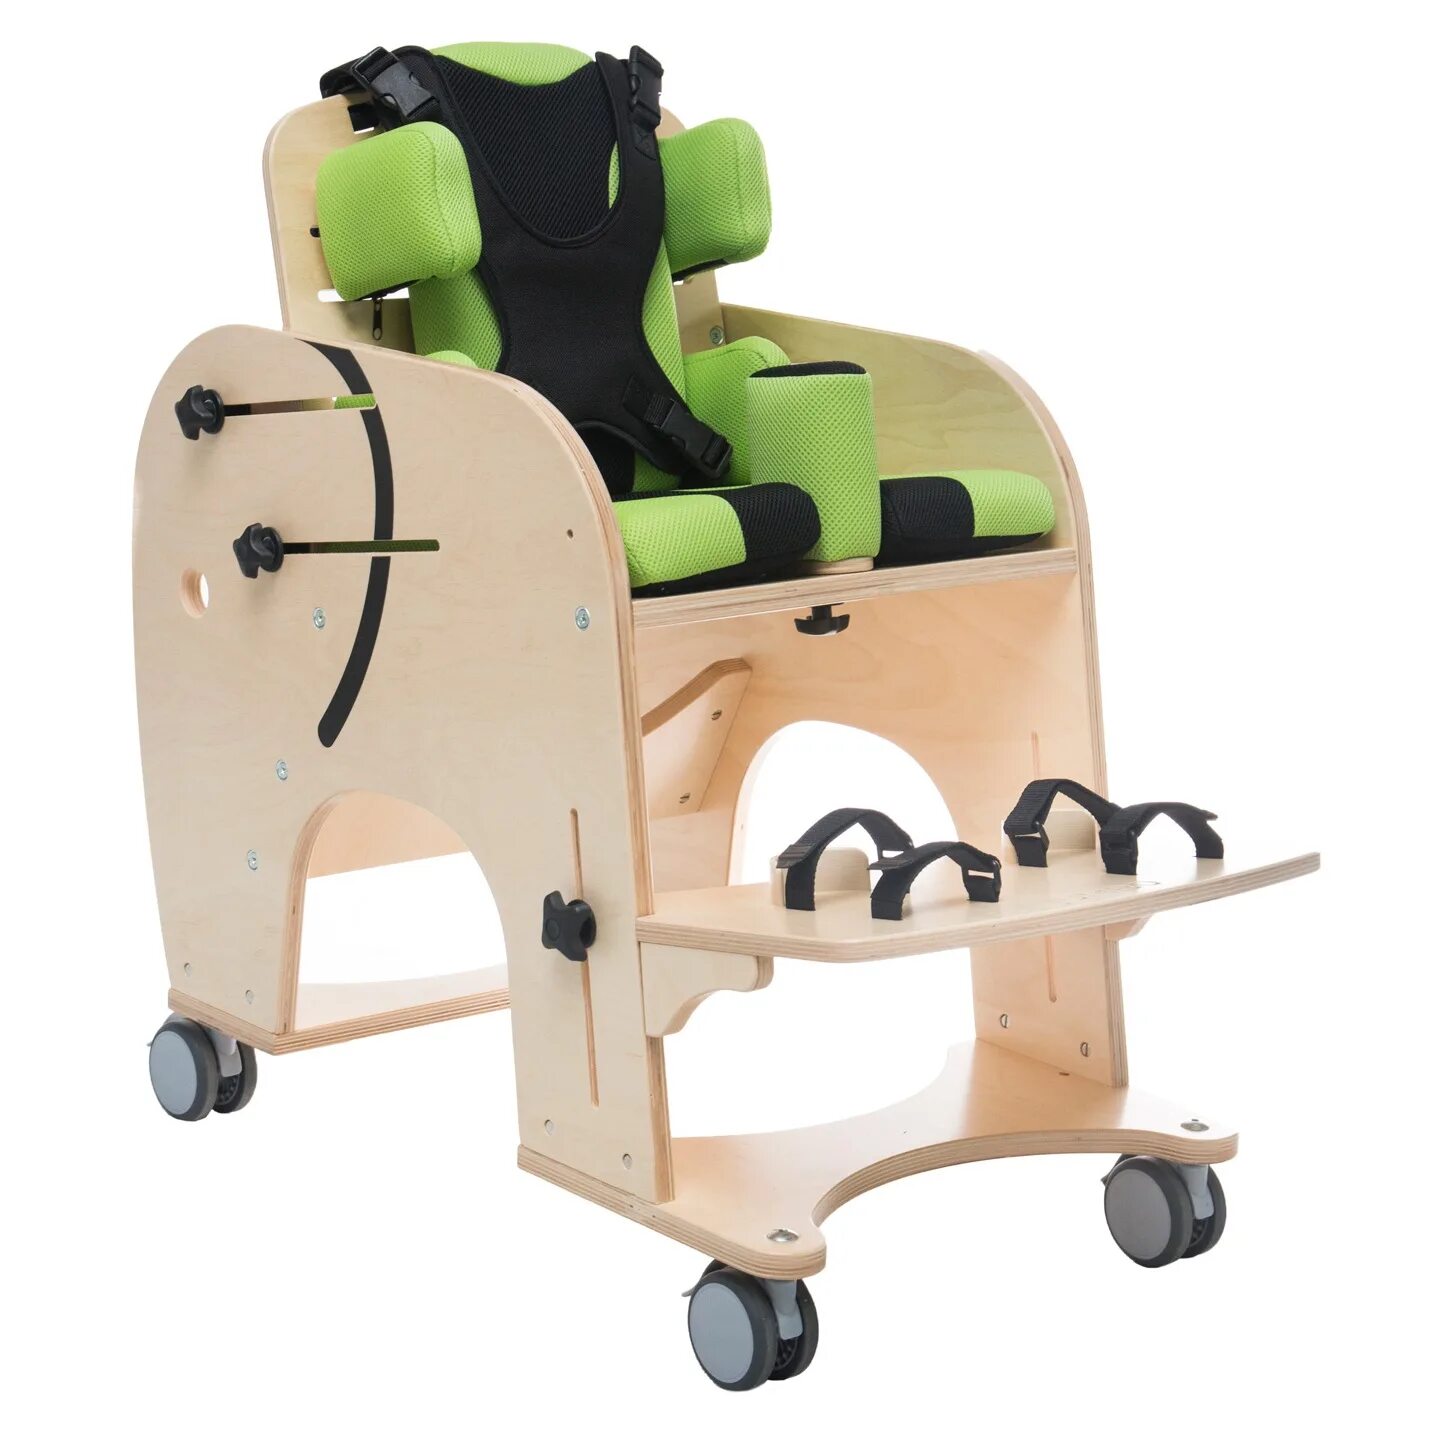 Сиденье для дцп. Вертикализатор - кресло для детей с ДЦП. Опора для сидения Akces-med. Кресло для детей с ДЦП И детей-инвалидов. Реабилитационное кресло для детей с ДЦП.